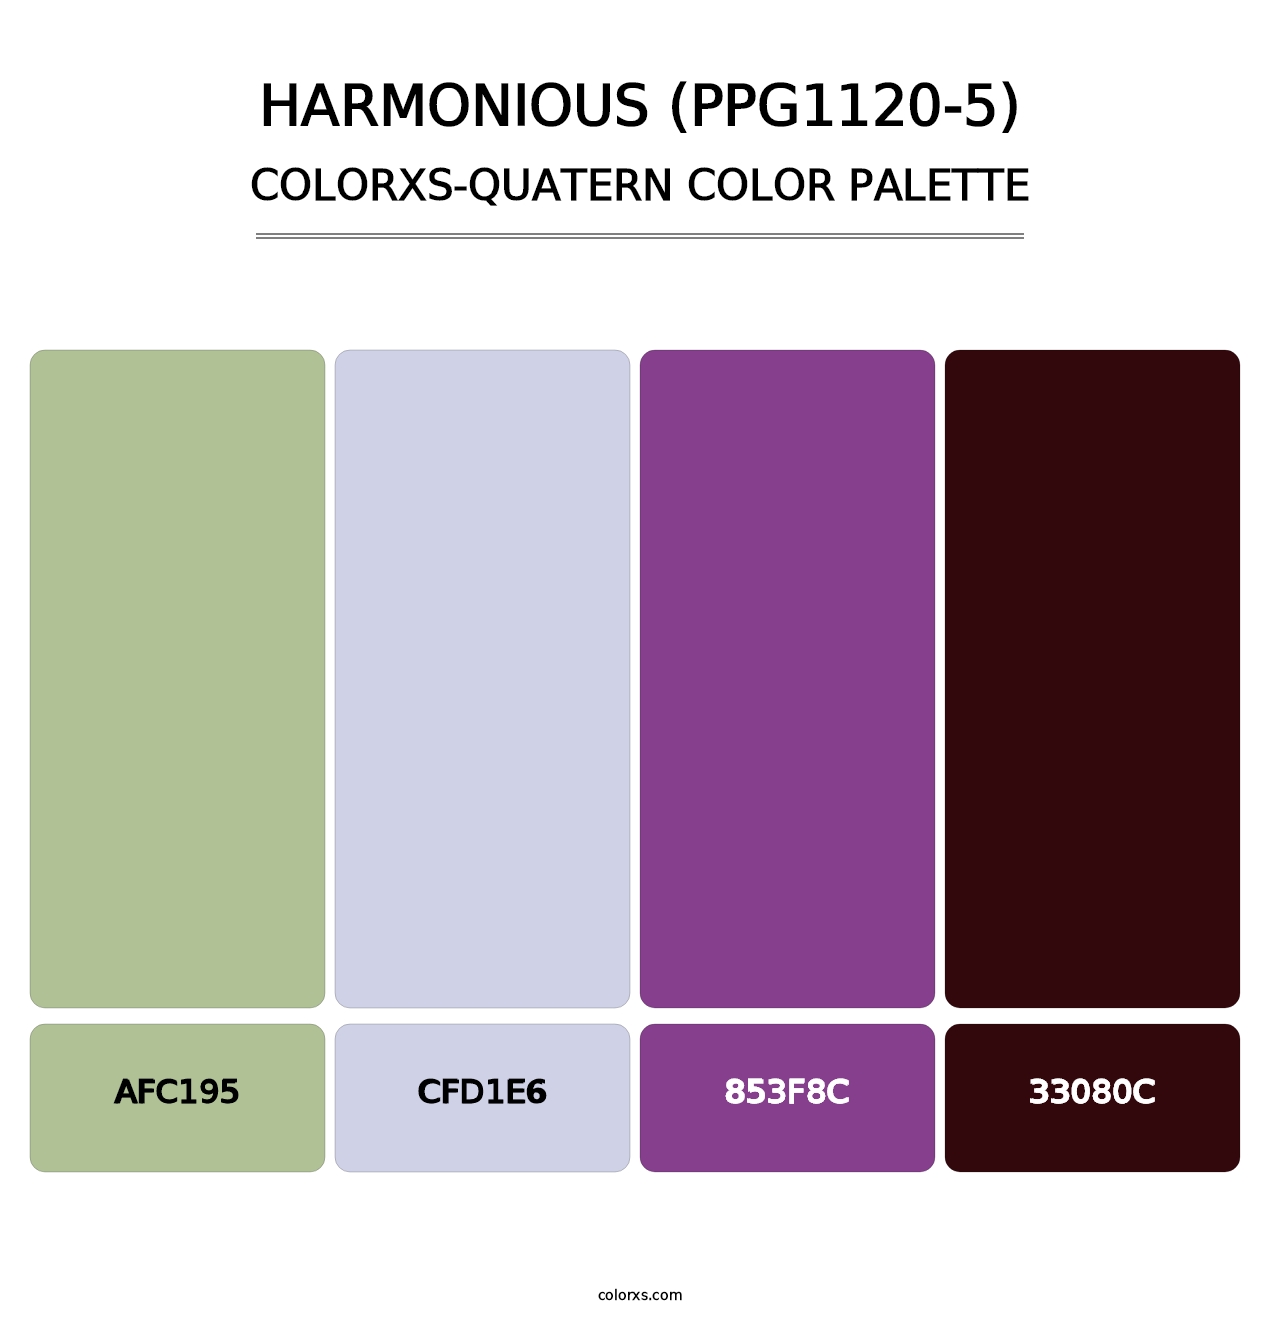 Harmonious (PPG1120-5) - Colorxs Quatern Palette